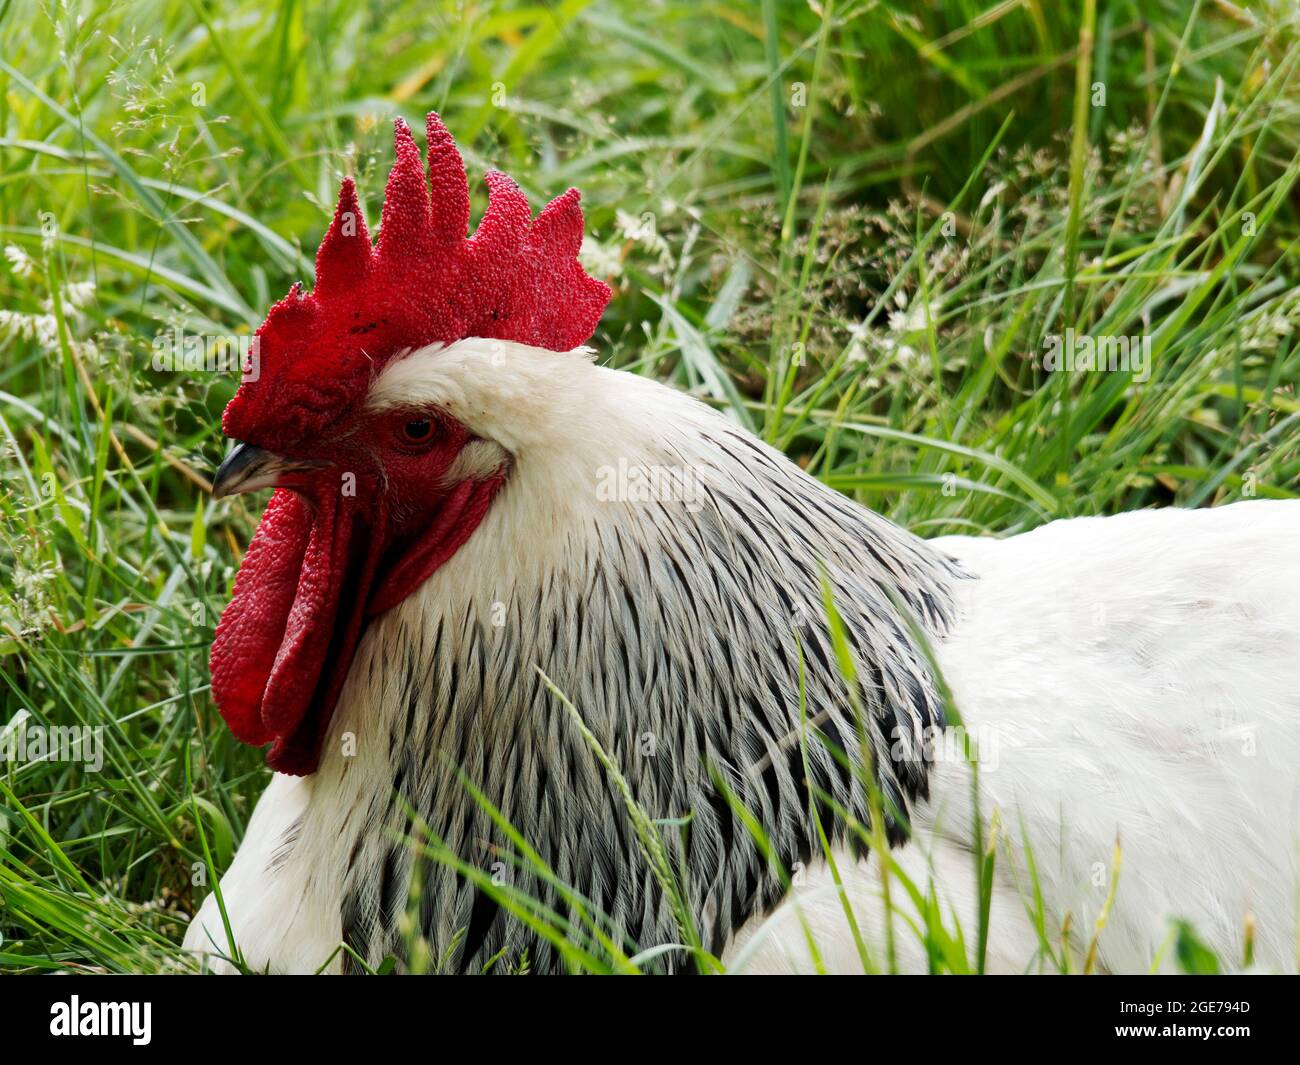 Galleta Sussex ligera o gallo en una carrera de pollo de hierba. Sussex claro es un doble propósito (huevo y carne) pollo que data de la época romana. Foto de stock